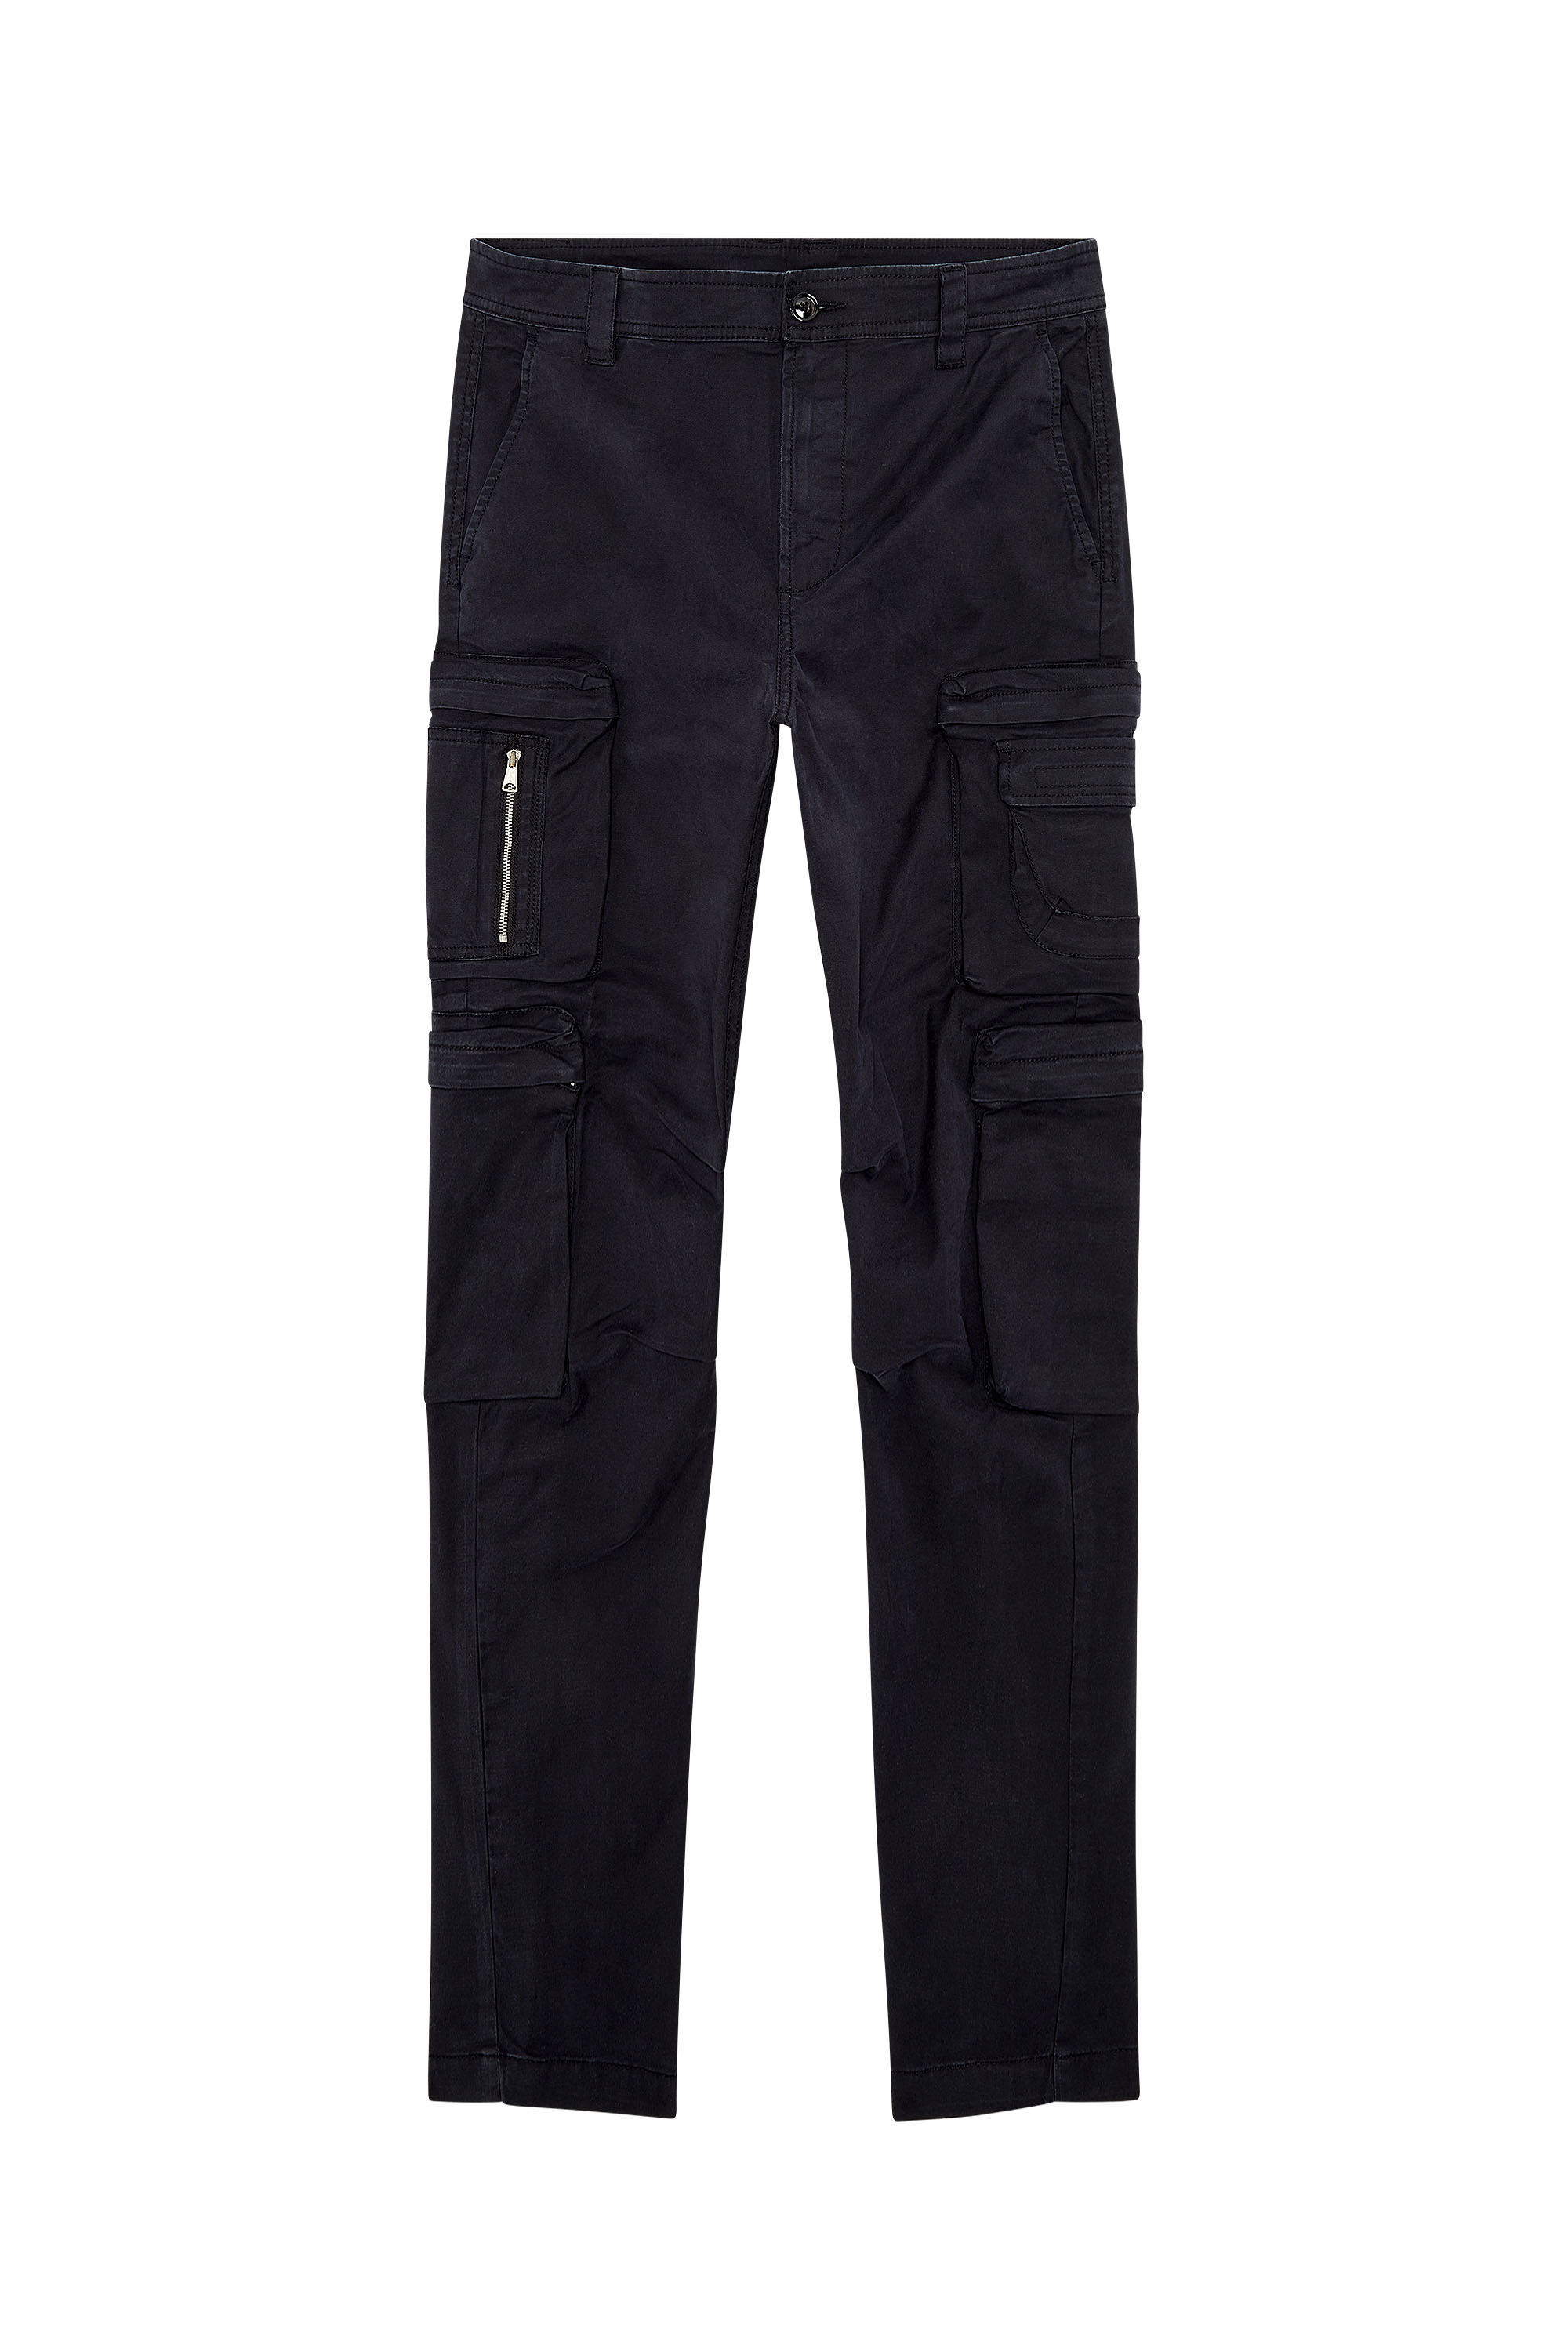 Men's Cargo pants with zip pocket